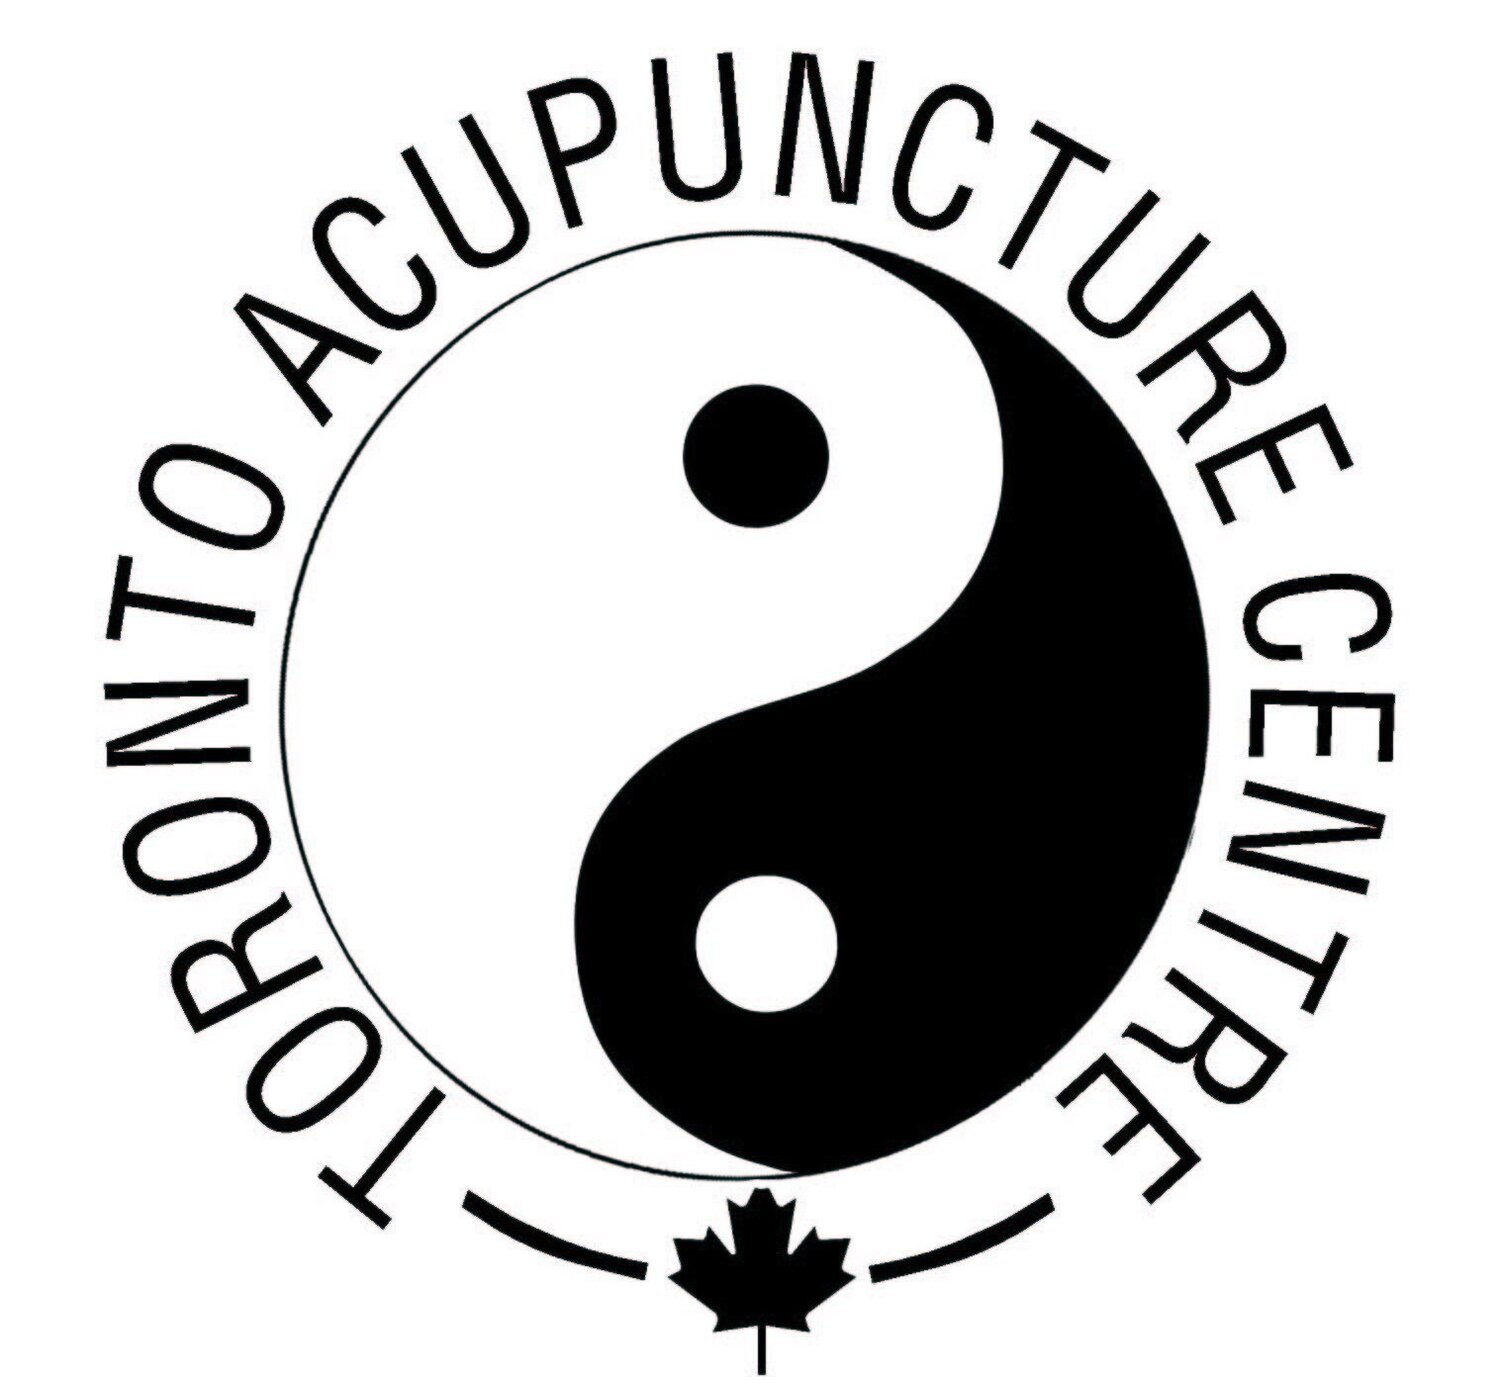 Toronto Acupuncture Center